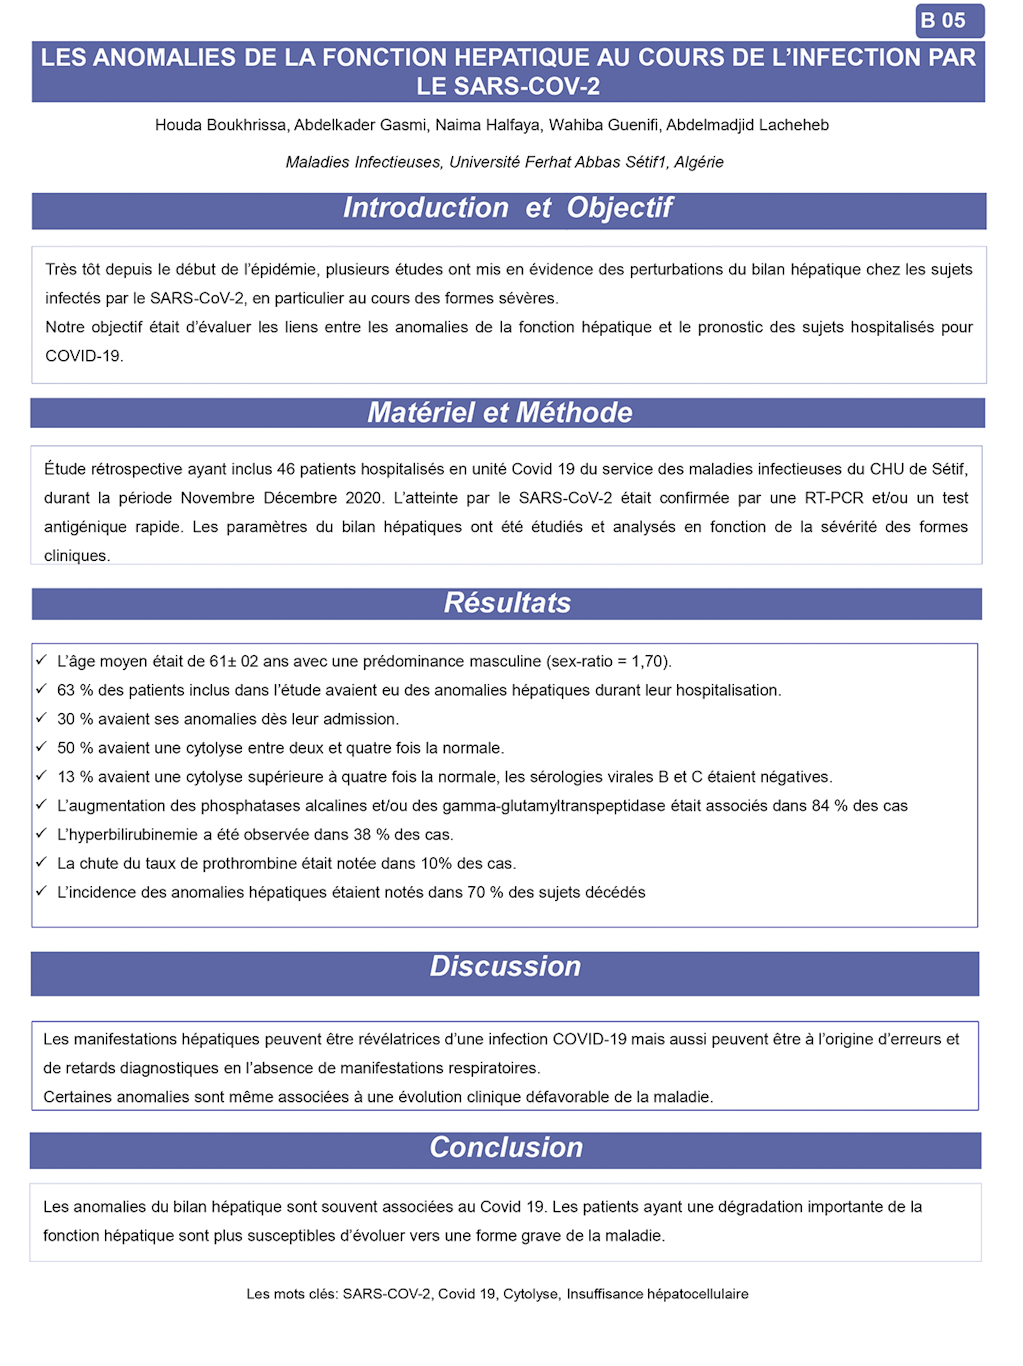 B05: LES ANOMALIES DE LA FONCTION HEPATIQUE AU COURS DE L’INFECTION PAR LE SARS-COV-2